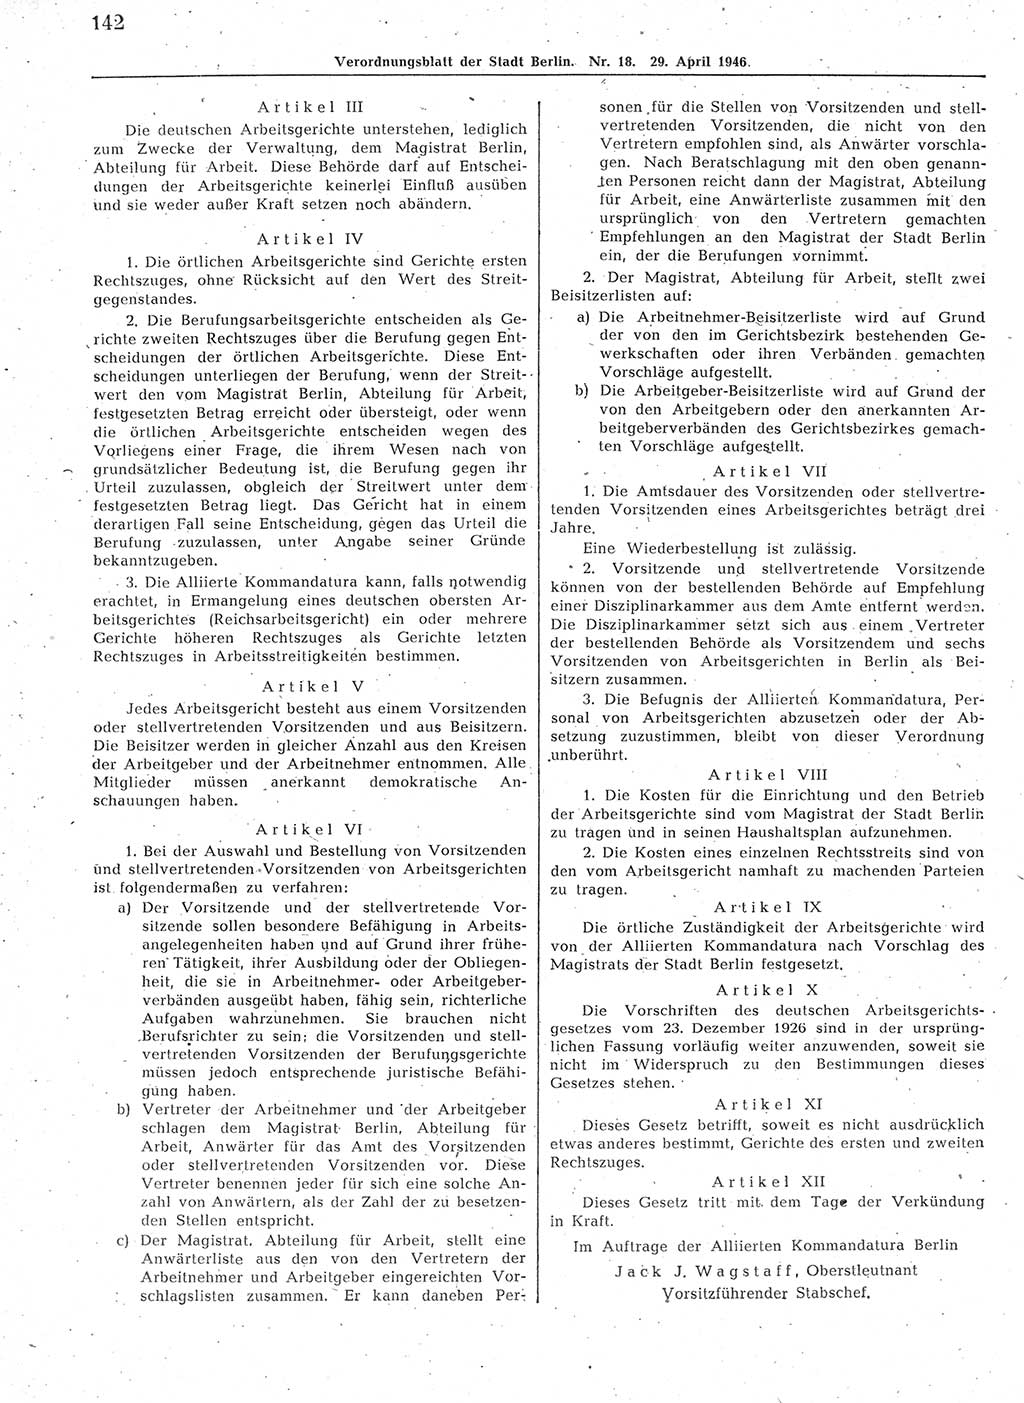 Verordnungsblatt (VOBl.) der Stadt Berlin, für Groß-Berlin 1946, Seite 142 (VOBl. Bln. 1946, S. 142)